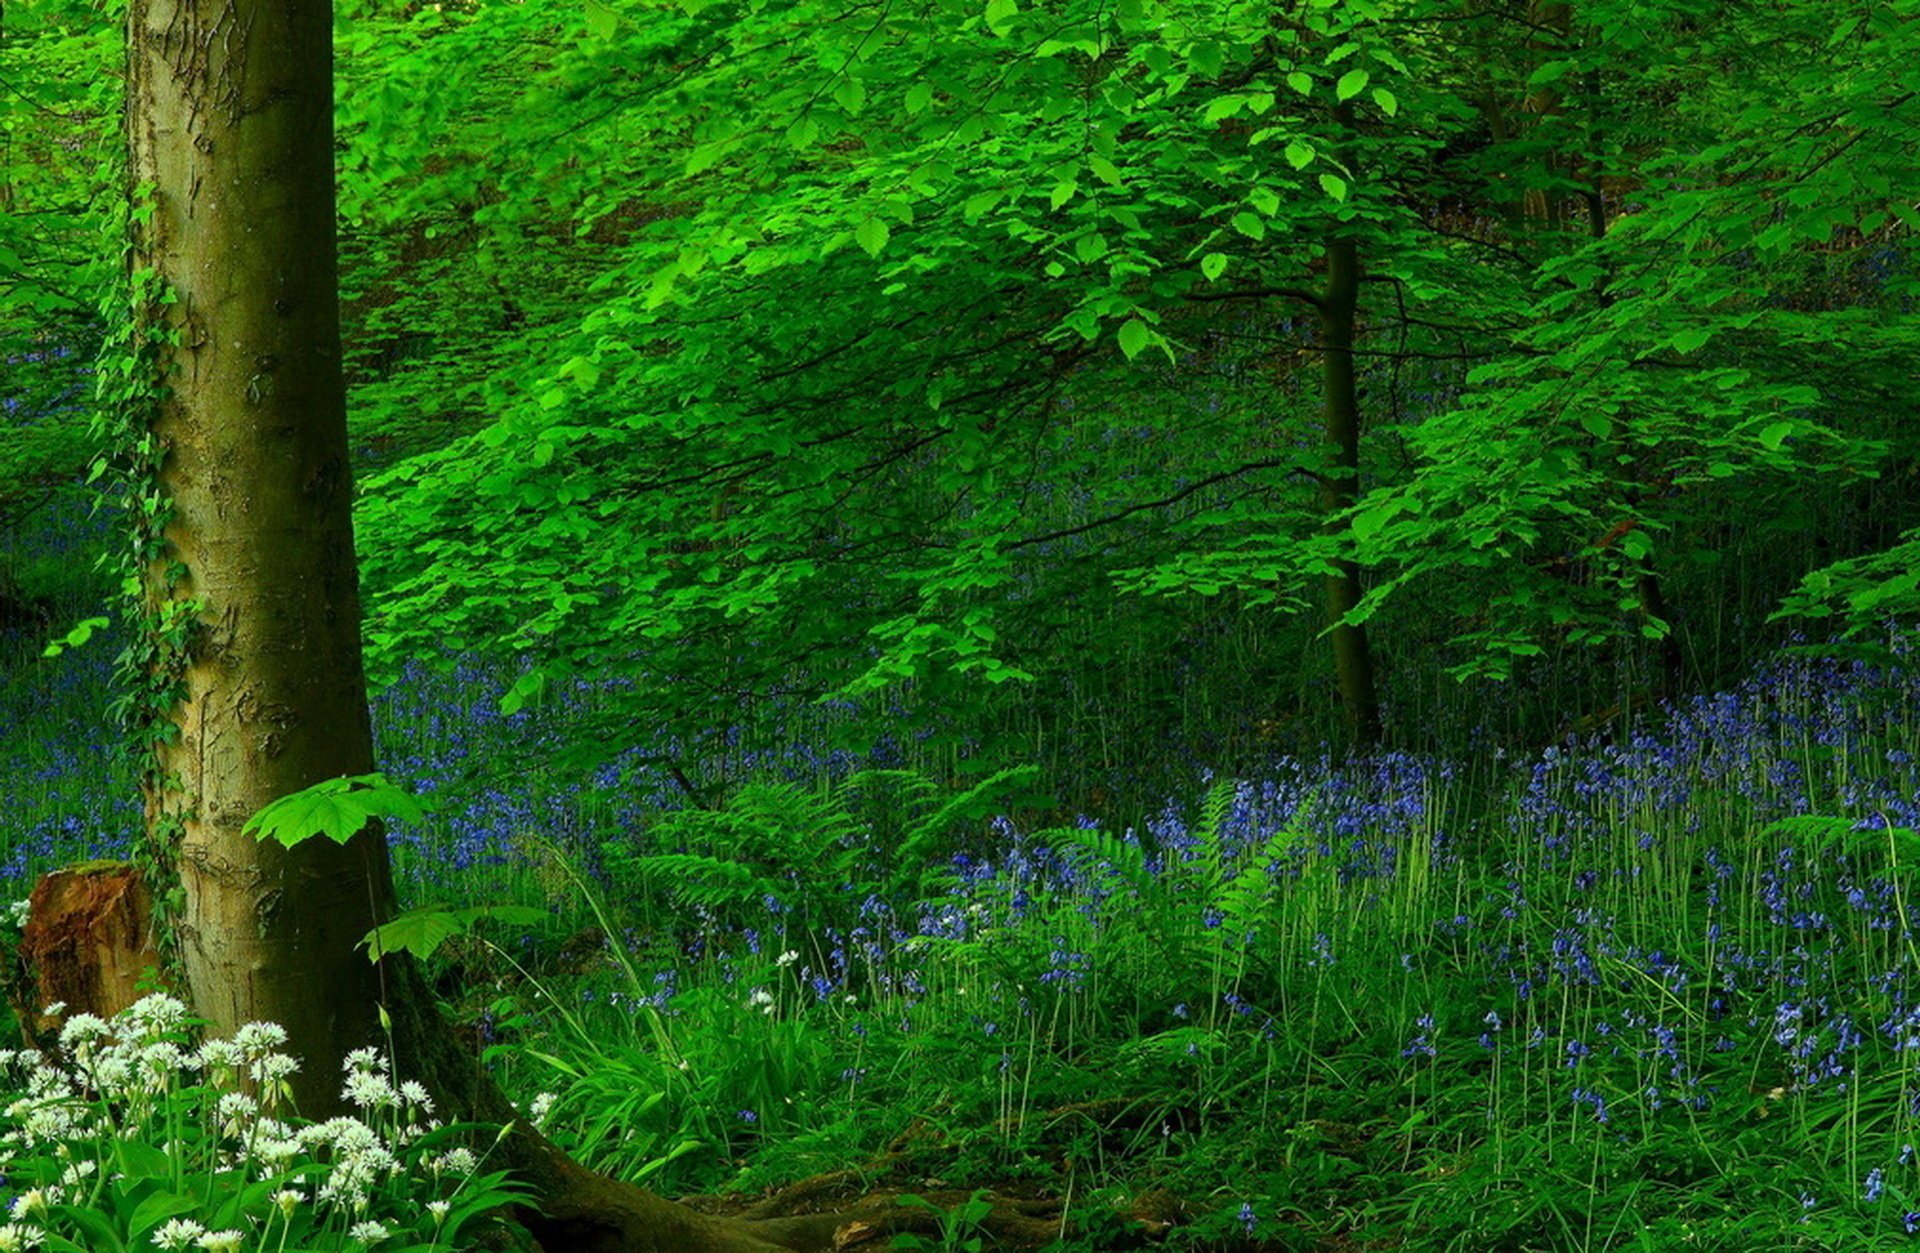 Картинка цветы в лесу. Красивые леса. Лесная растительность. Зеленый лес. Красивая природа лес.